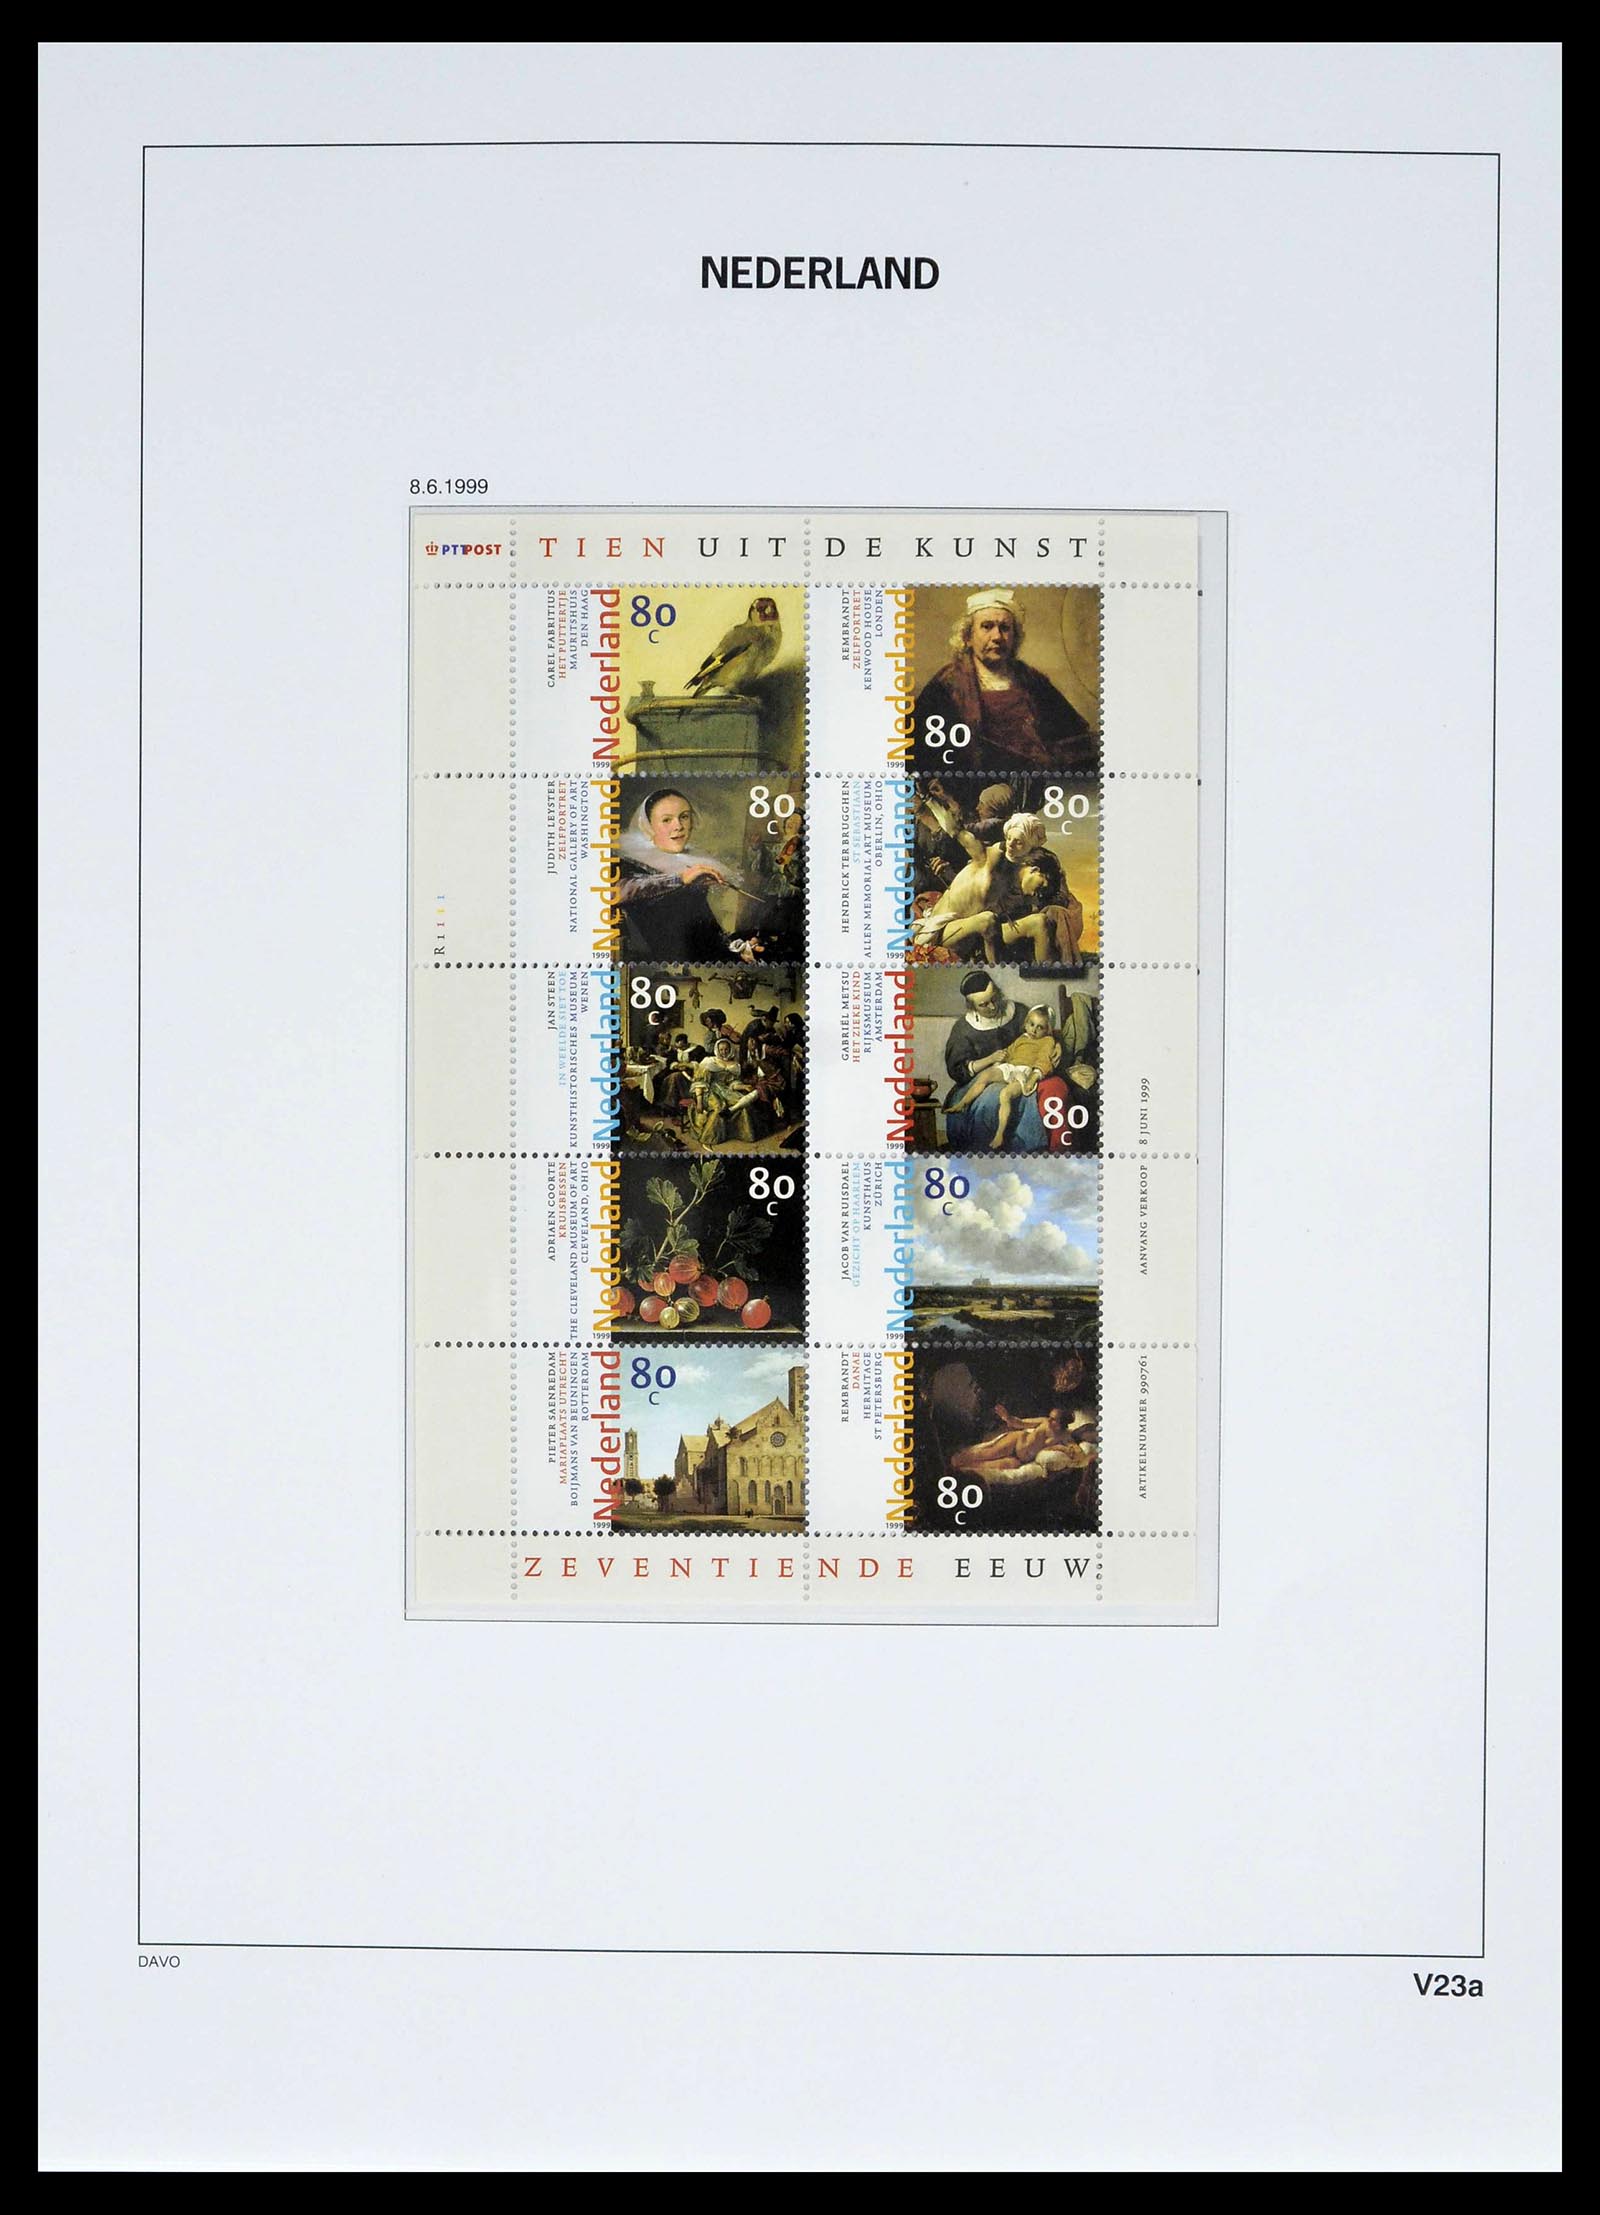 39134 0034 - Stamp collection 39134 Netherlands sheetlets 1992-2019!